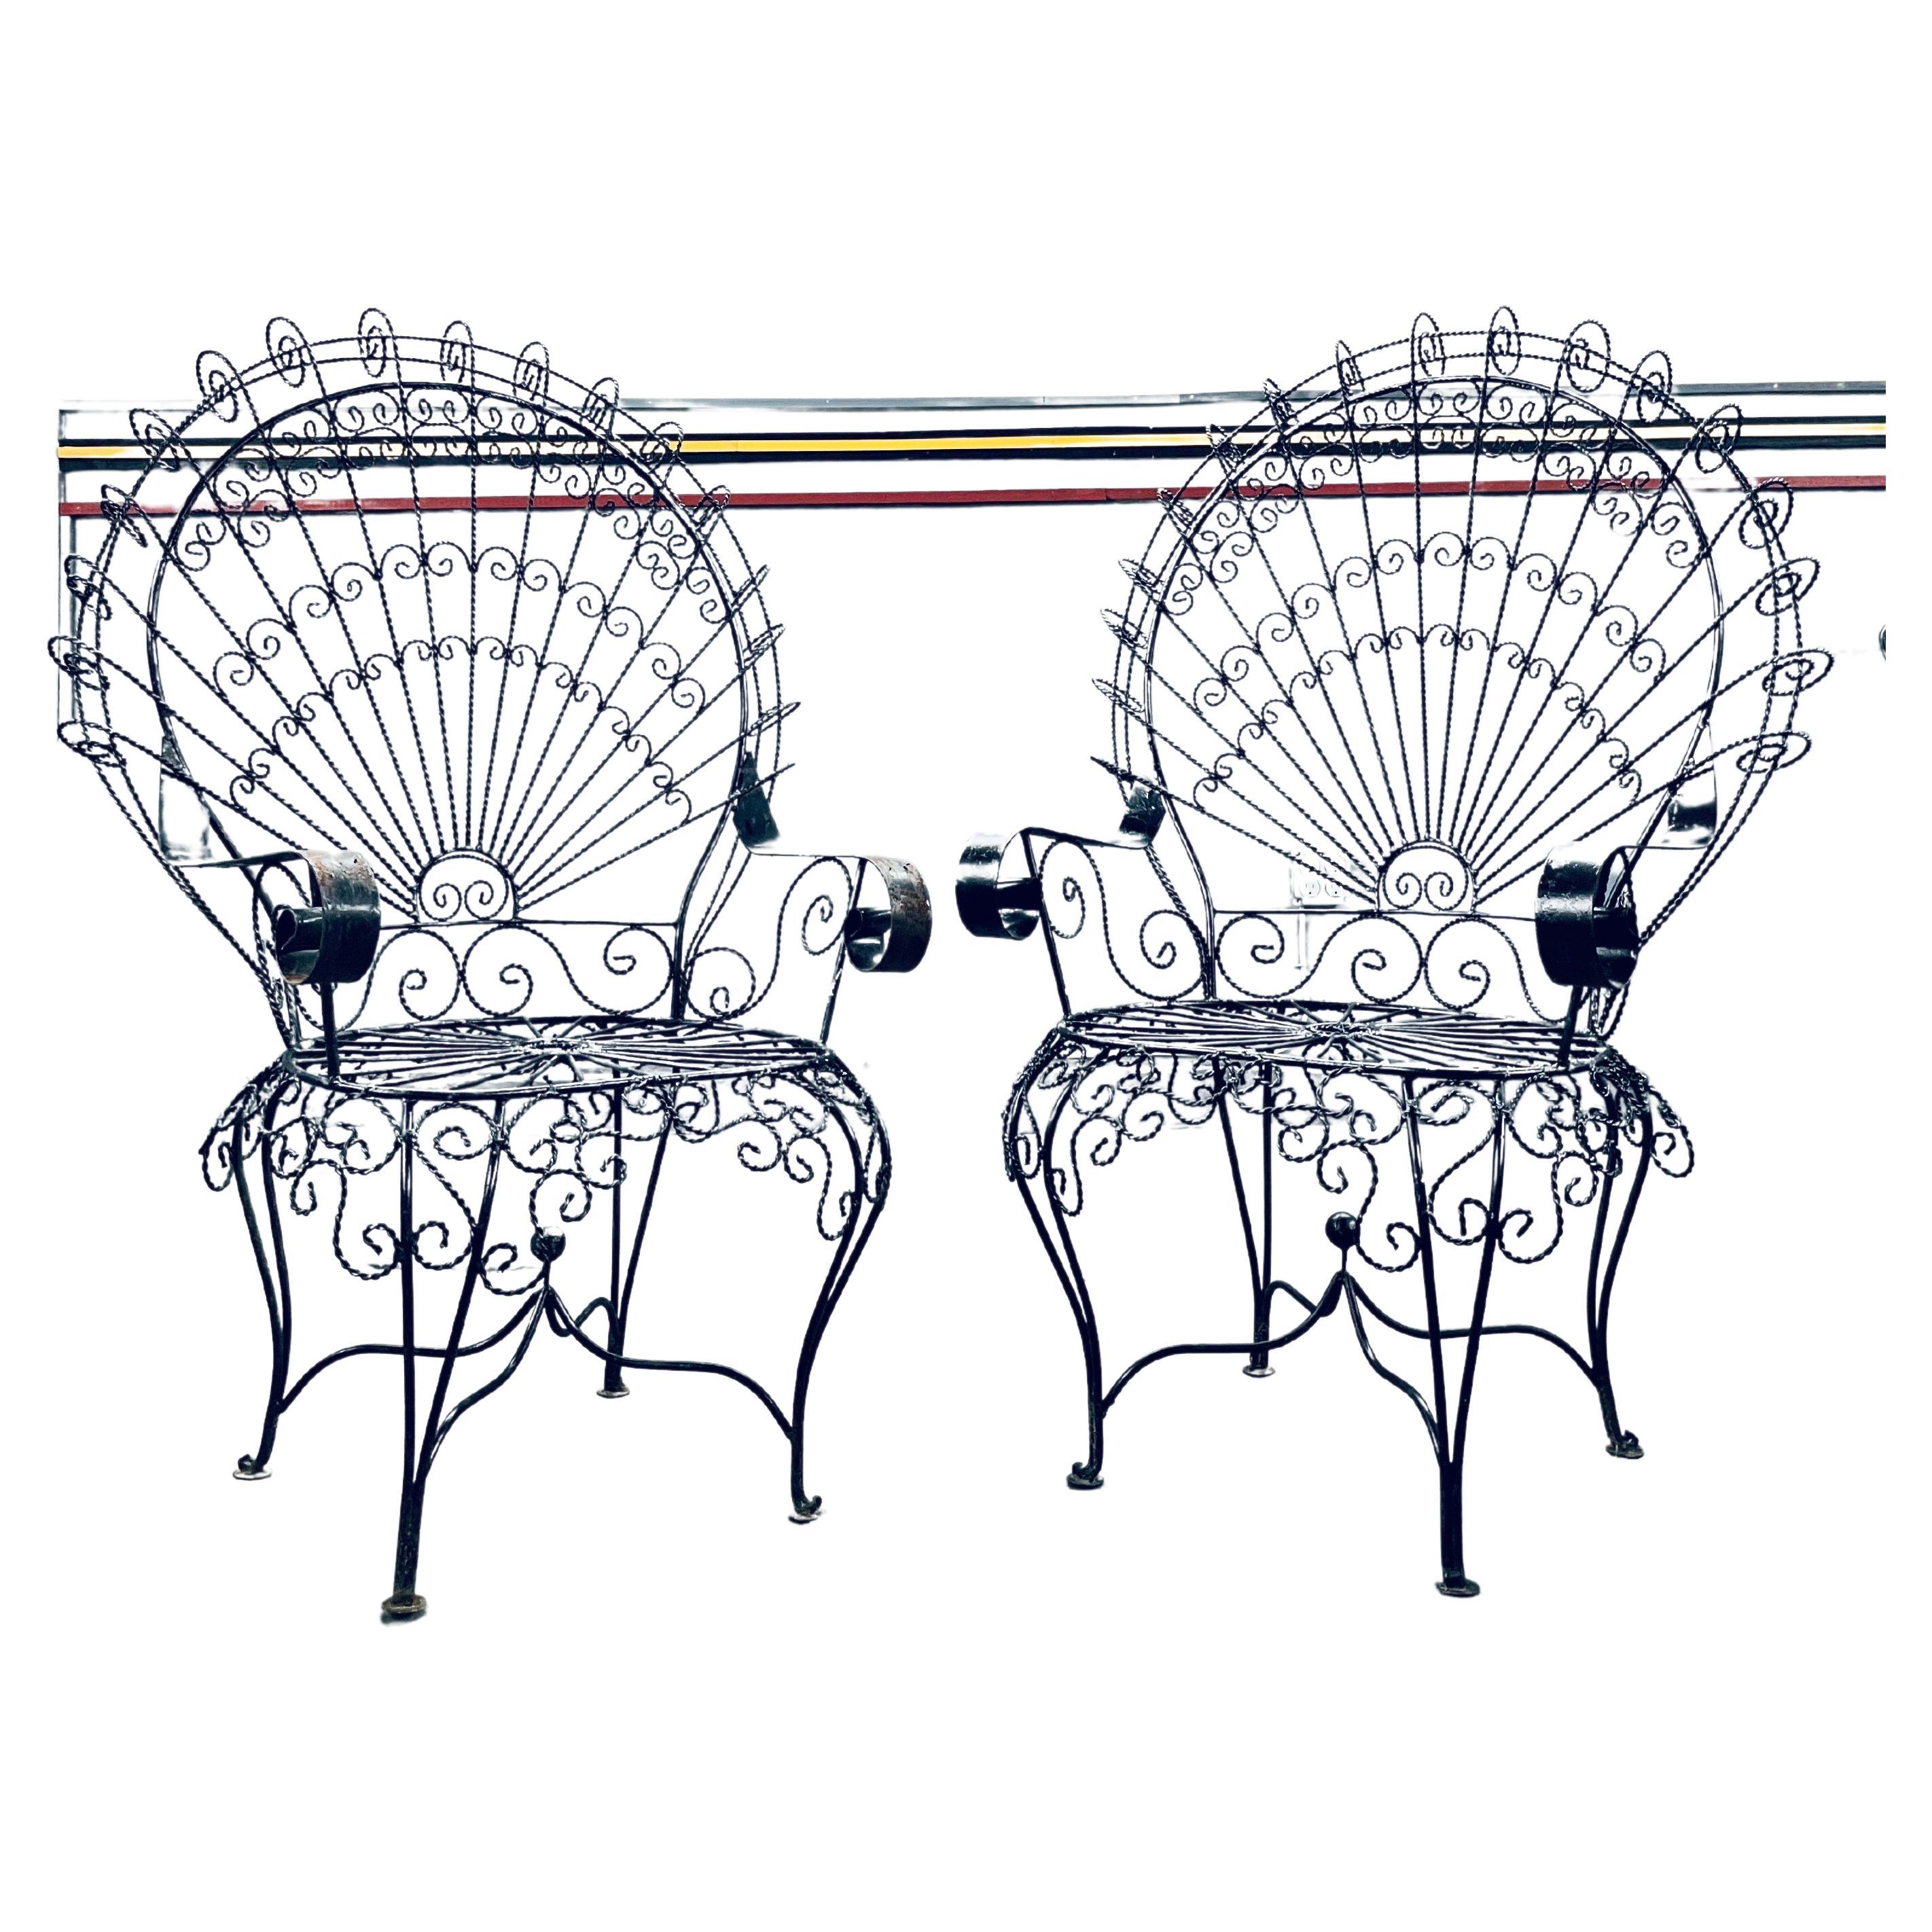 Vintage Salterini Peacock Stuhl - ein Paar

Signature High Back Chairs Großzügig bemessene Stühle mit breiter Sitzfläche und einer Höhe von bis zu 4 Fuß. Ausgezeichnete verschnörkelte Detailarbeit aus gedrehtem Eisen, frei von Brüchen. Diese Stühle